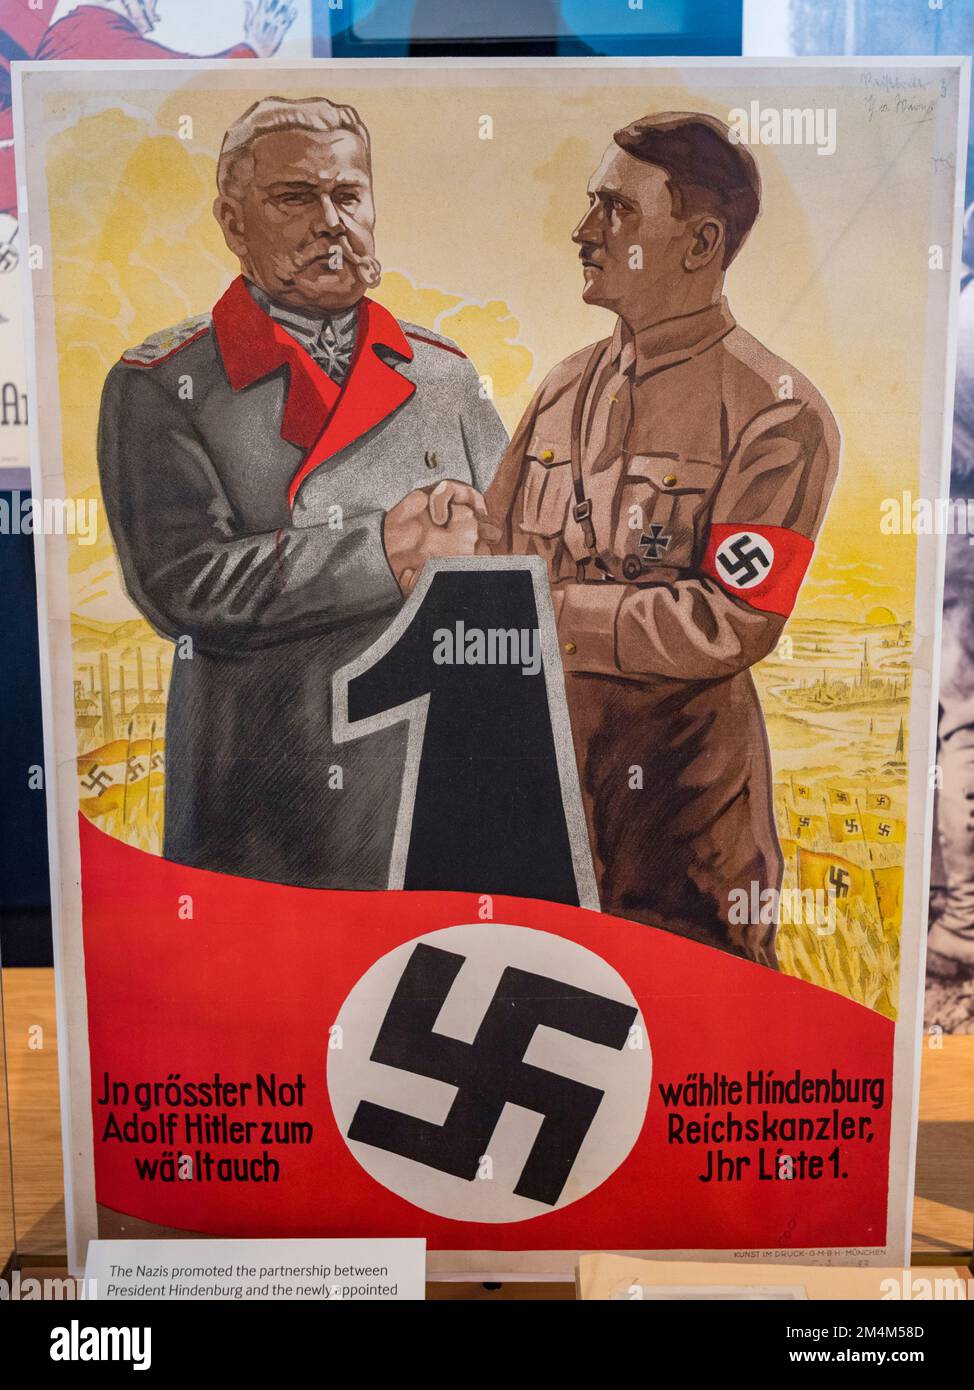 Une affiche de propagande nazie faisant la promotion d'un partenariat entre le président Hindenburg et le chancelier Hitler, Holocaust Galleries, Imperial War Museum, Londres, Royaume-Uni. Banque D'Images